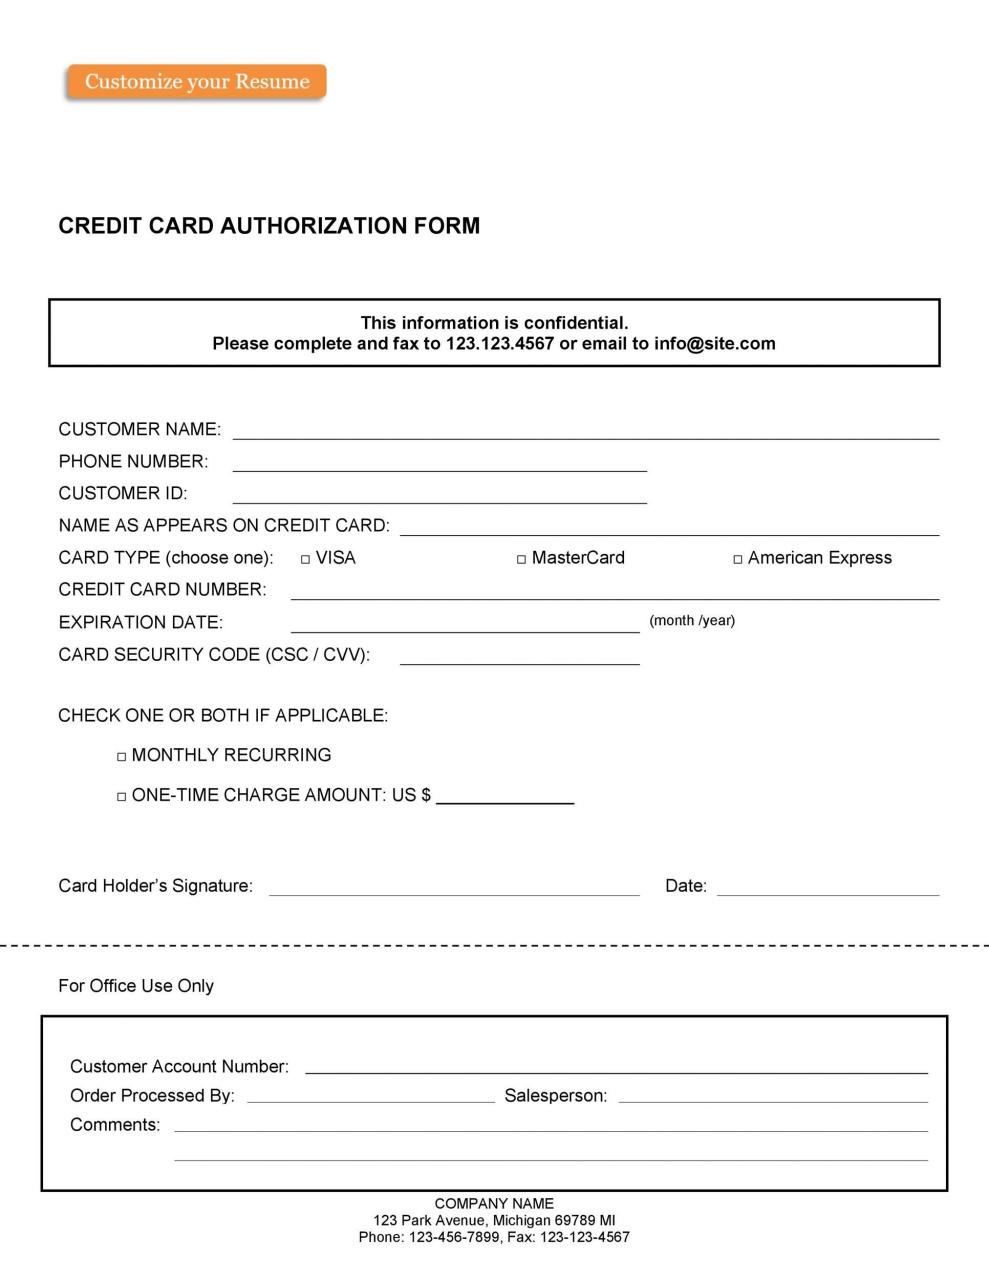 Plantilla de formulario de autorización de tarjeta de crédito gratis 07